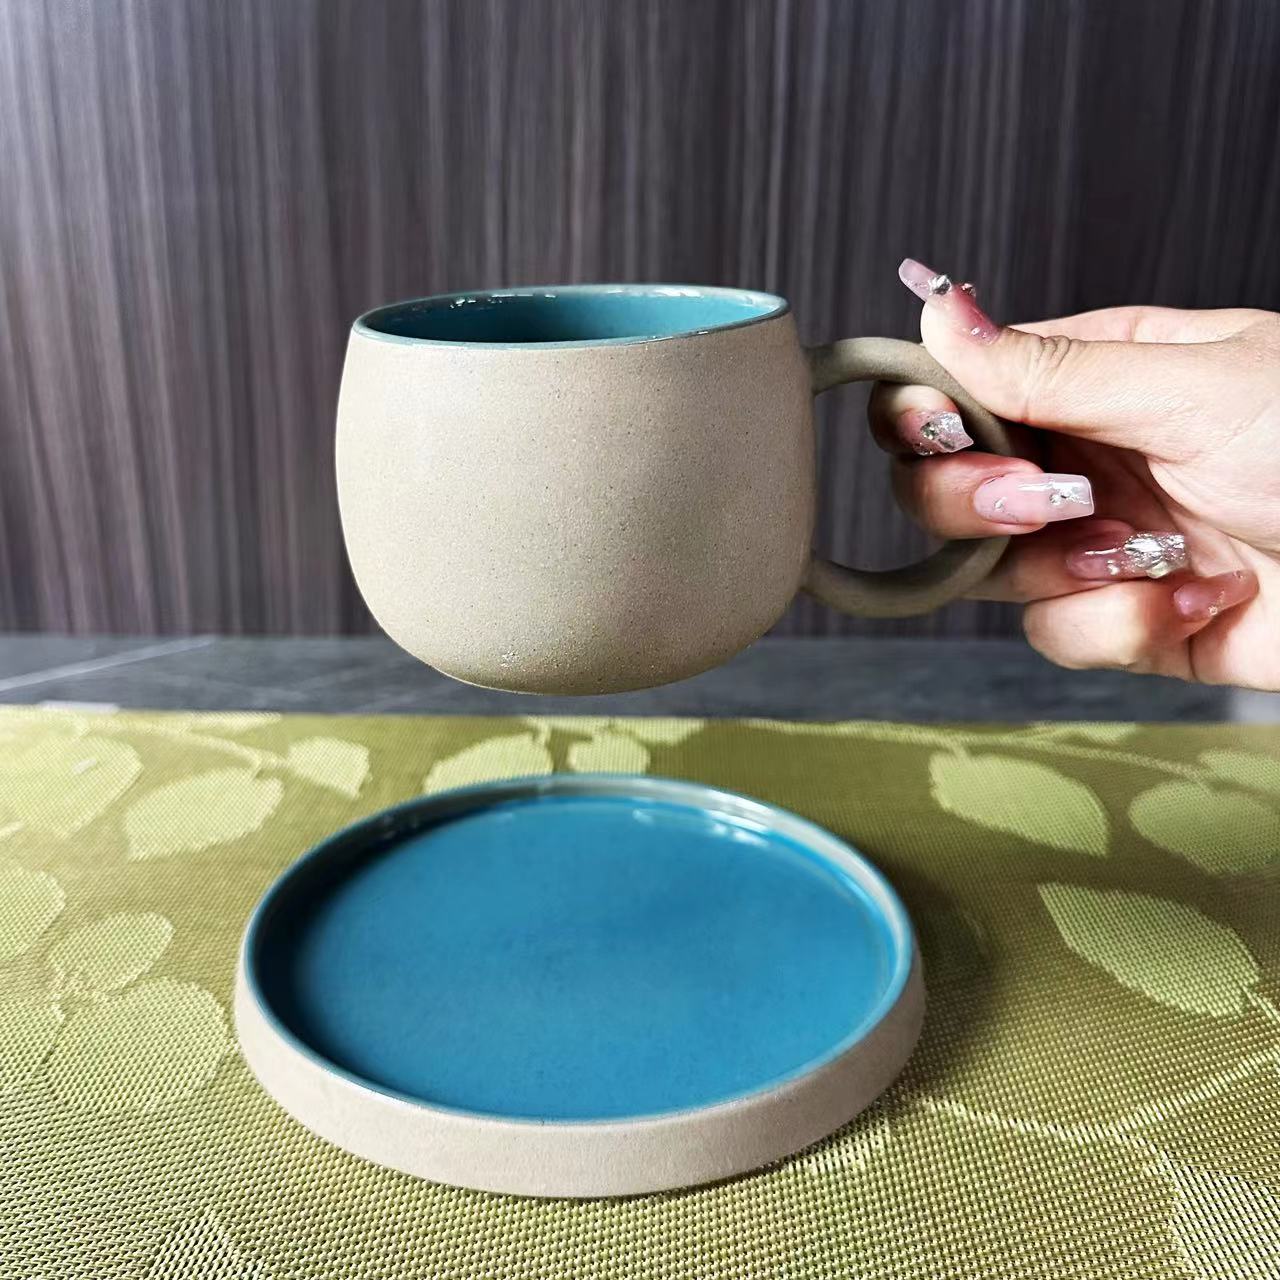 咖啡杯/咖啡杯碟套装/马克杯/咖啡用具/陶瓷杯/磨砂陶瓷产品图